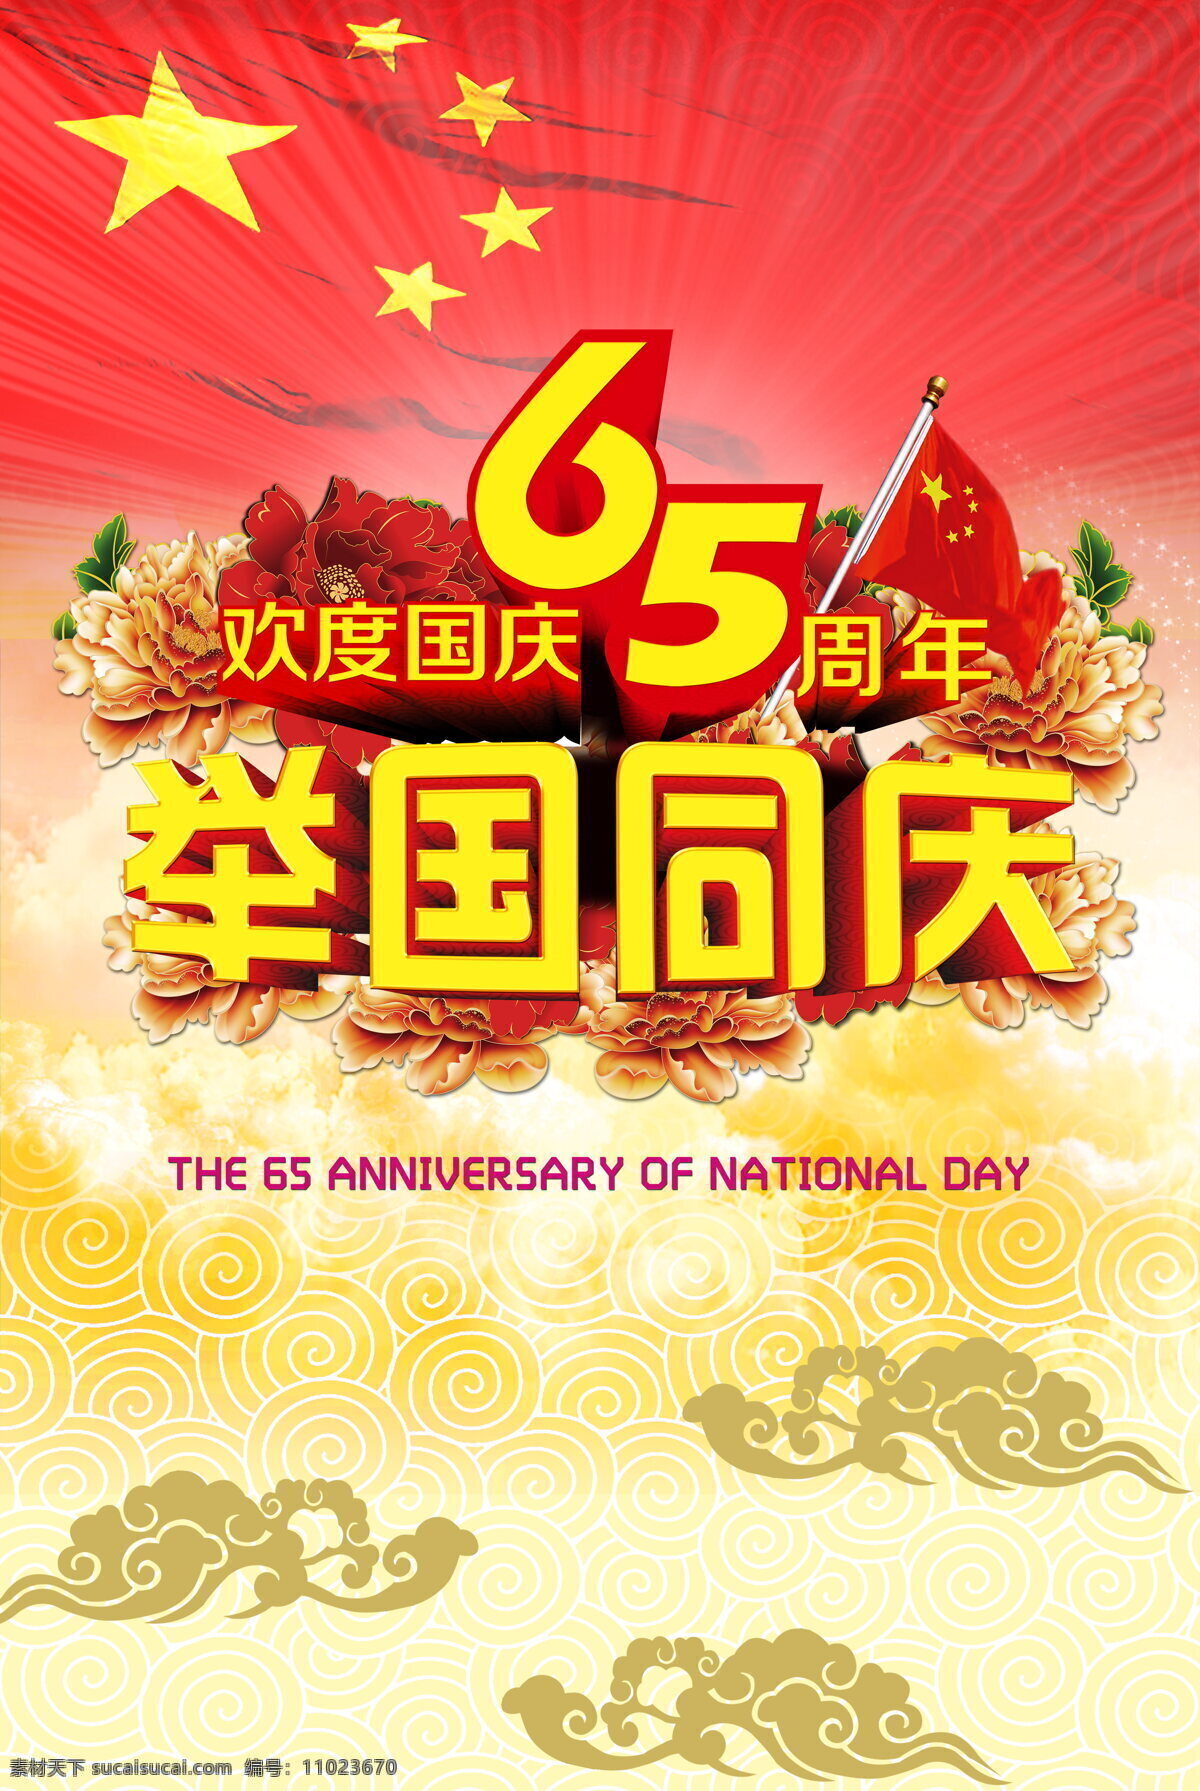 2014 国庆节 2014年 65周年 举国同庆 五星红旗